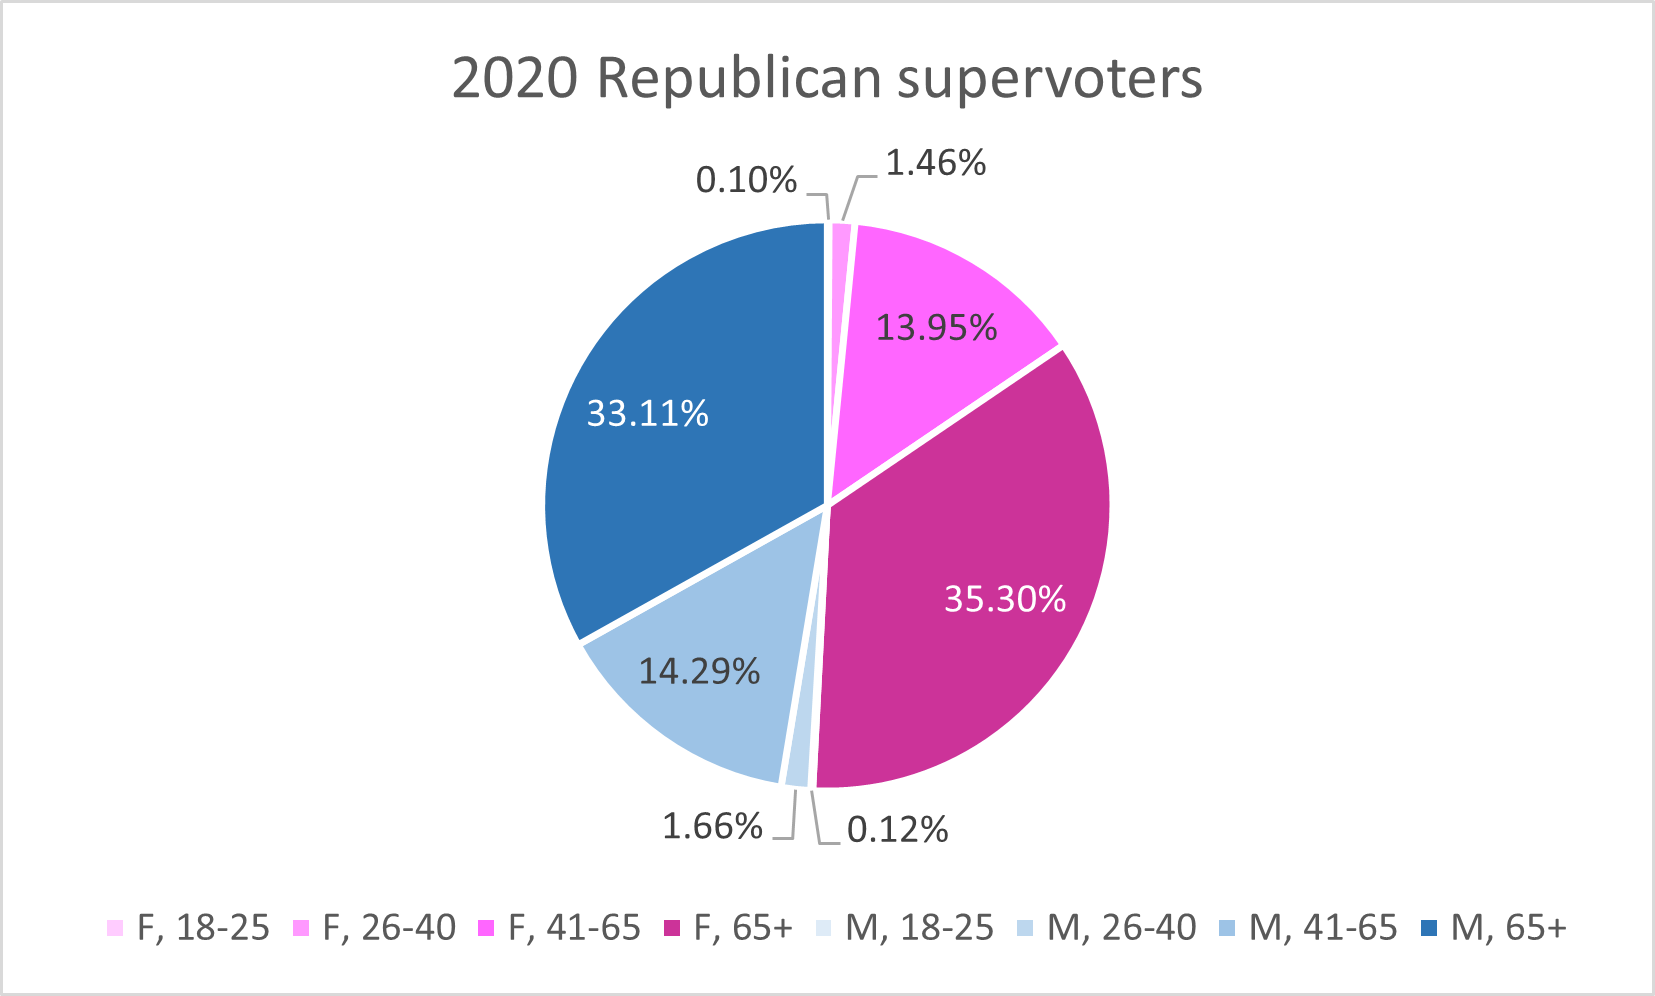 Supervoter Republicans, age + gender